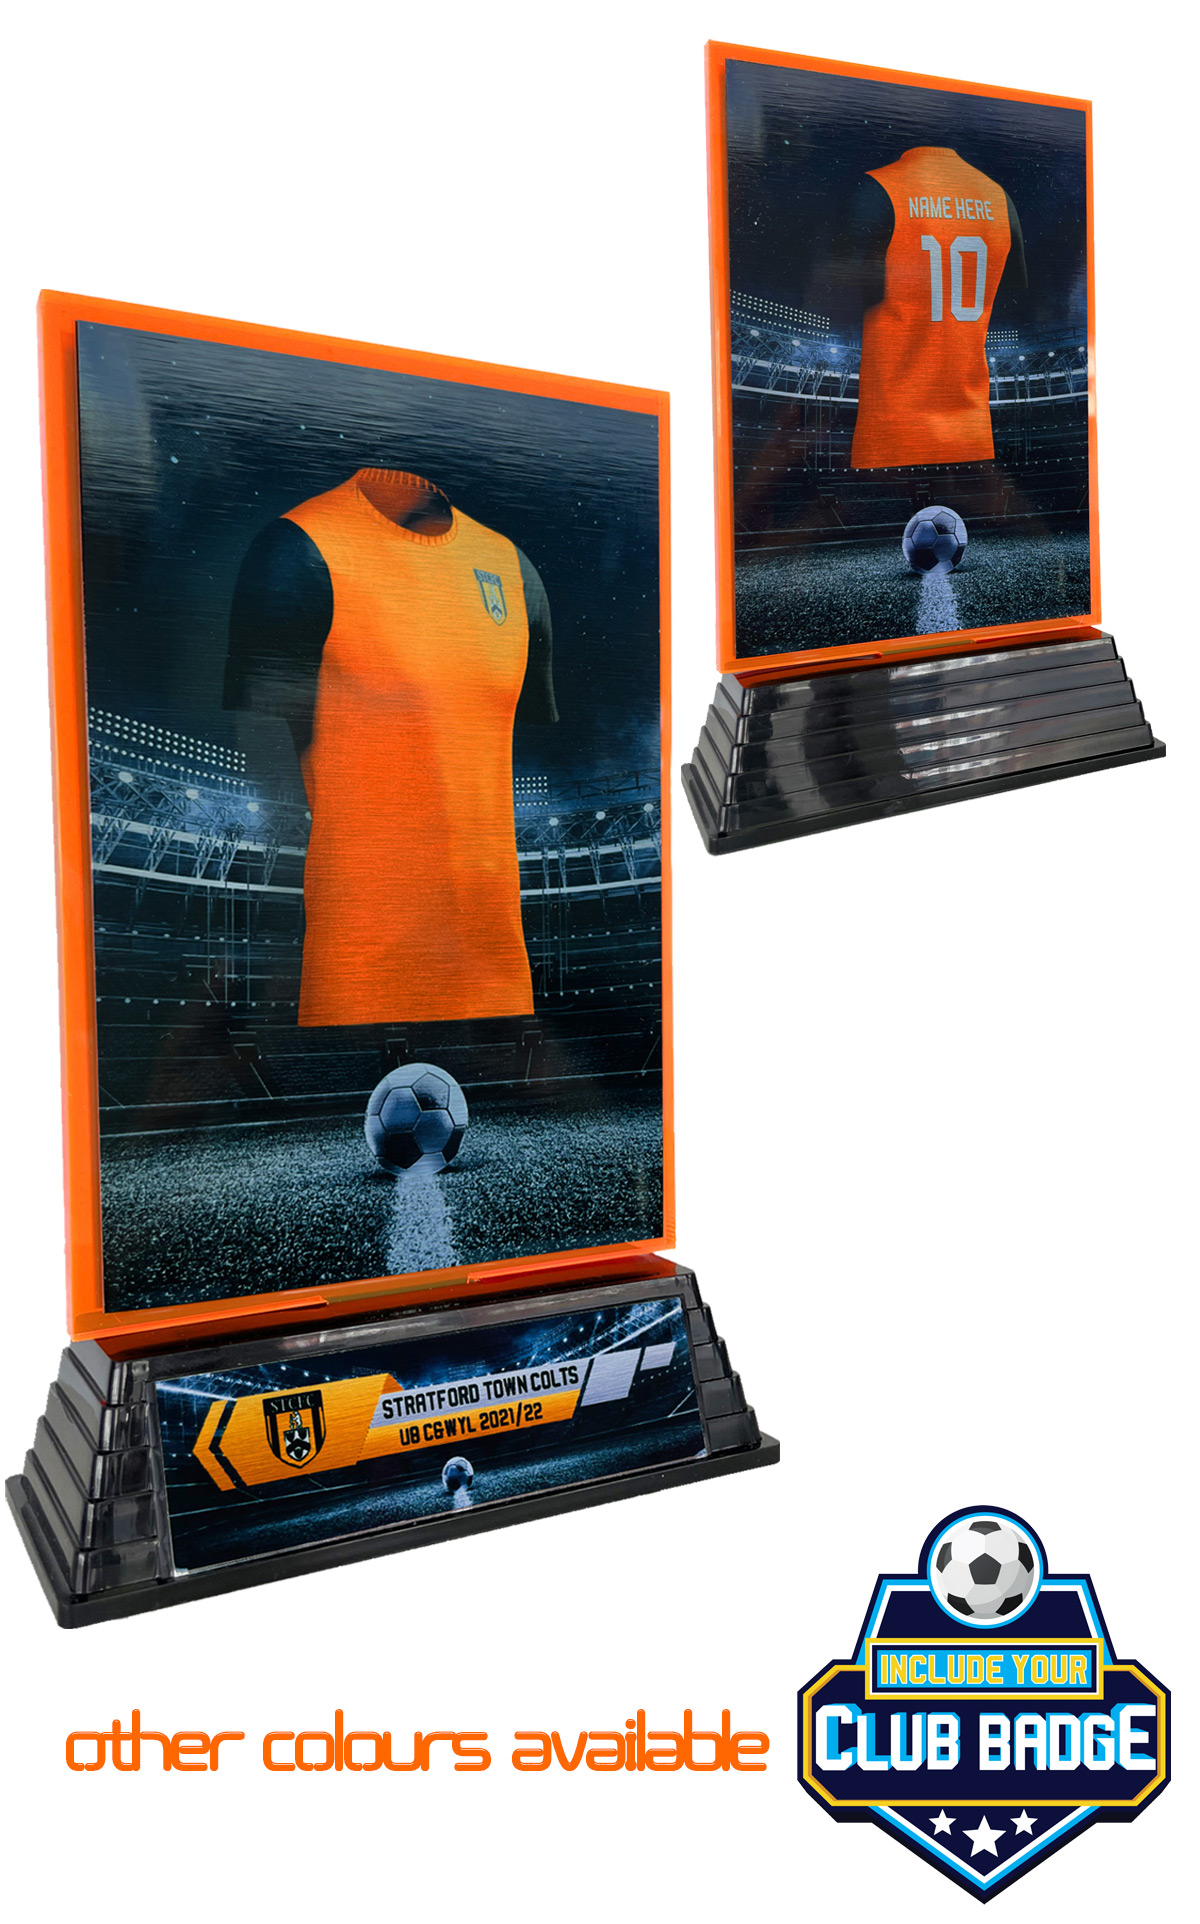 MULTIBUY FROM £7.95 - Bespoke Fluorescent Orange Acrylic Kit Awards